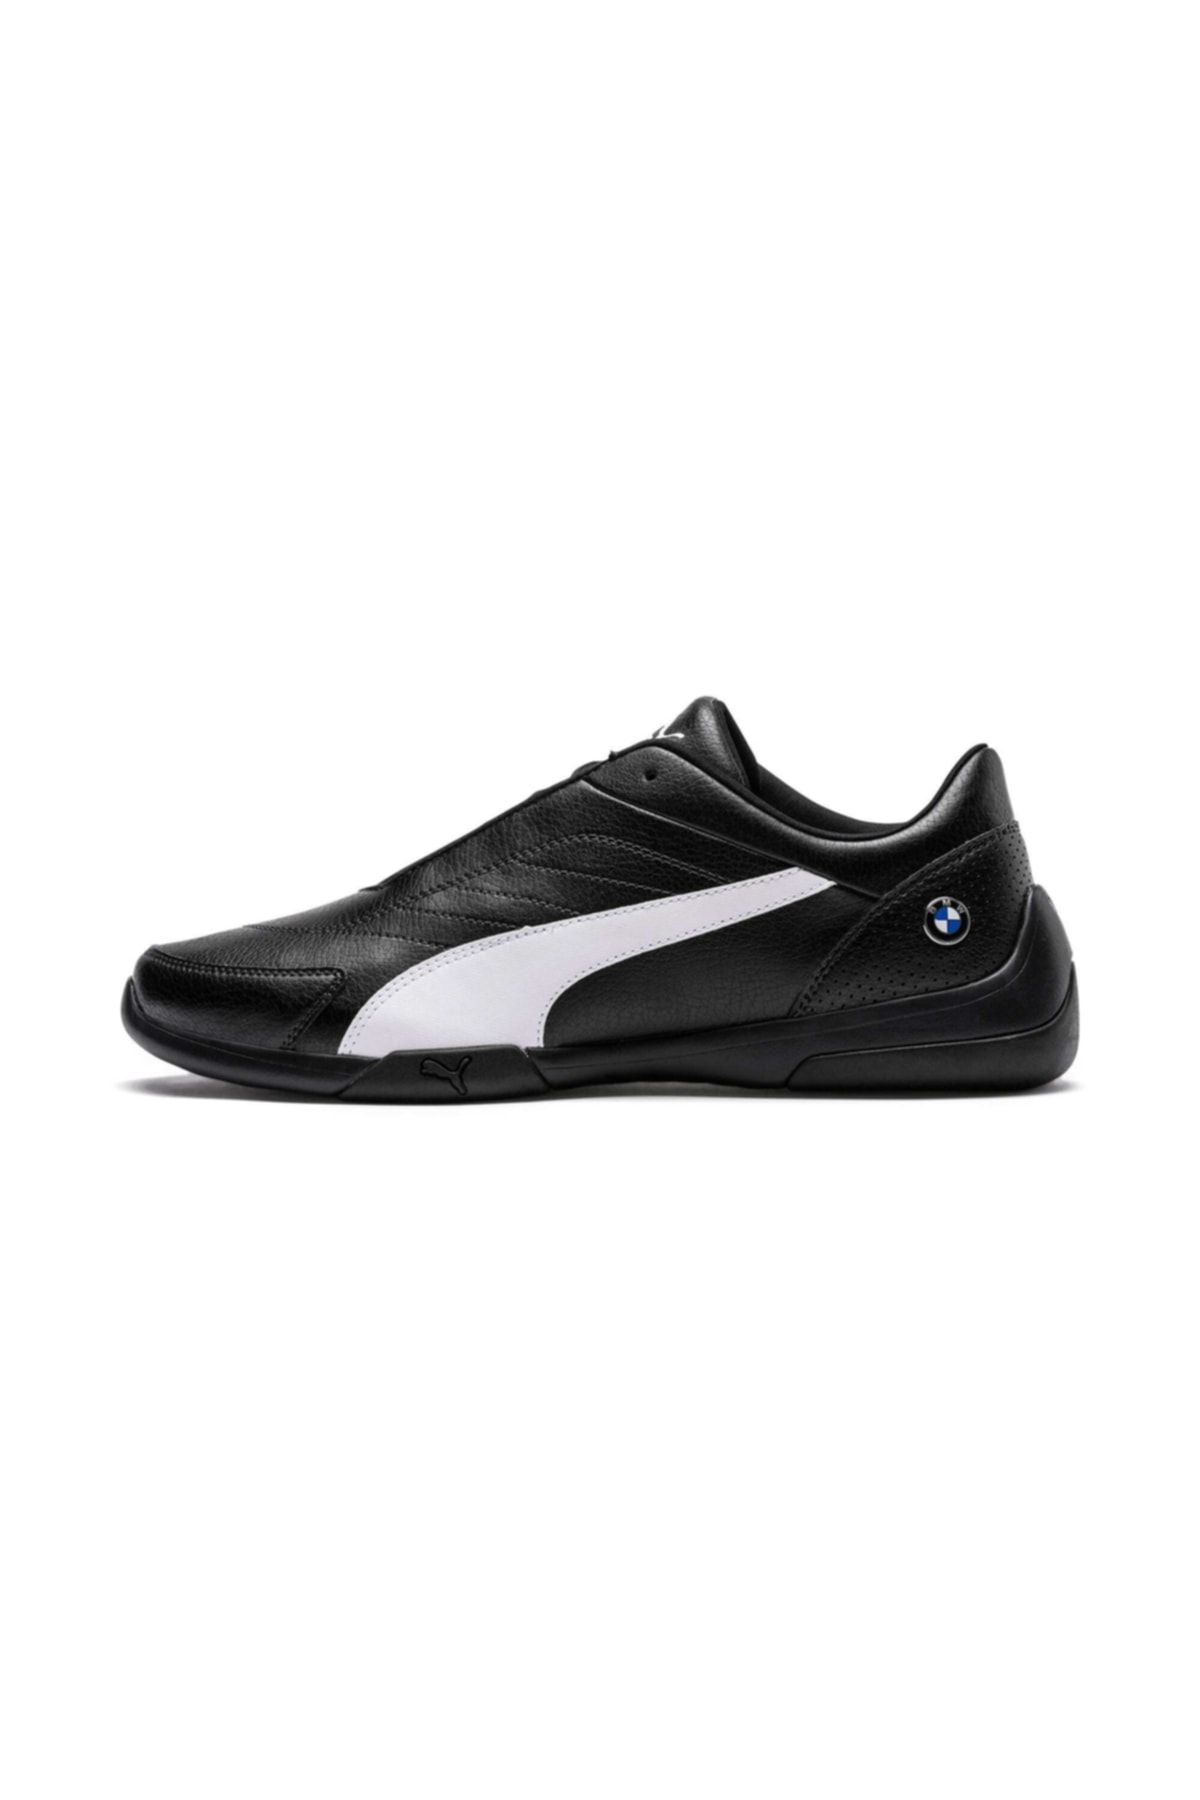 Puma Erkek Siyah Beyaz Ayakkabı 30621801